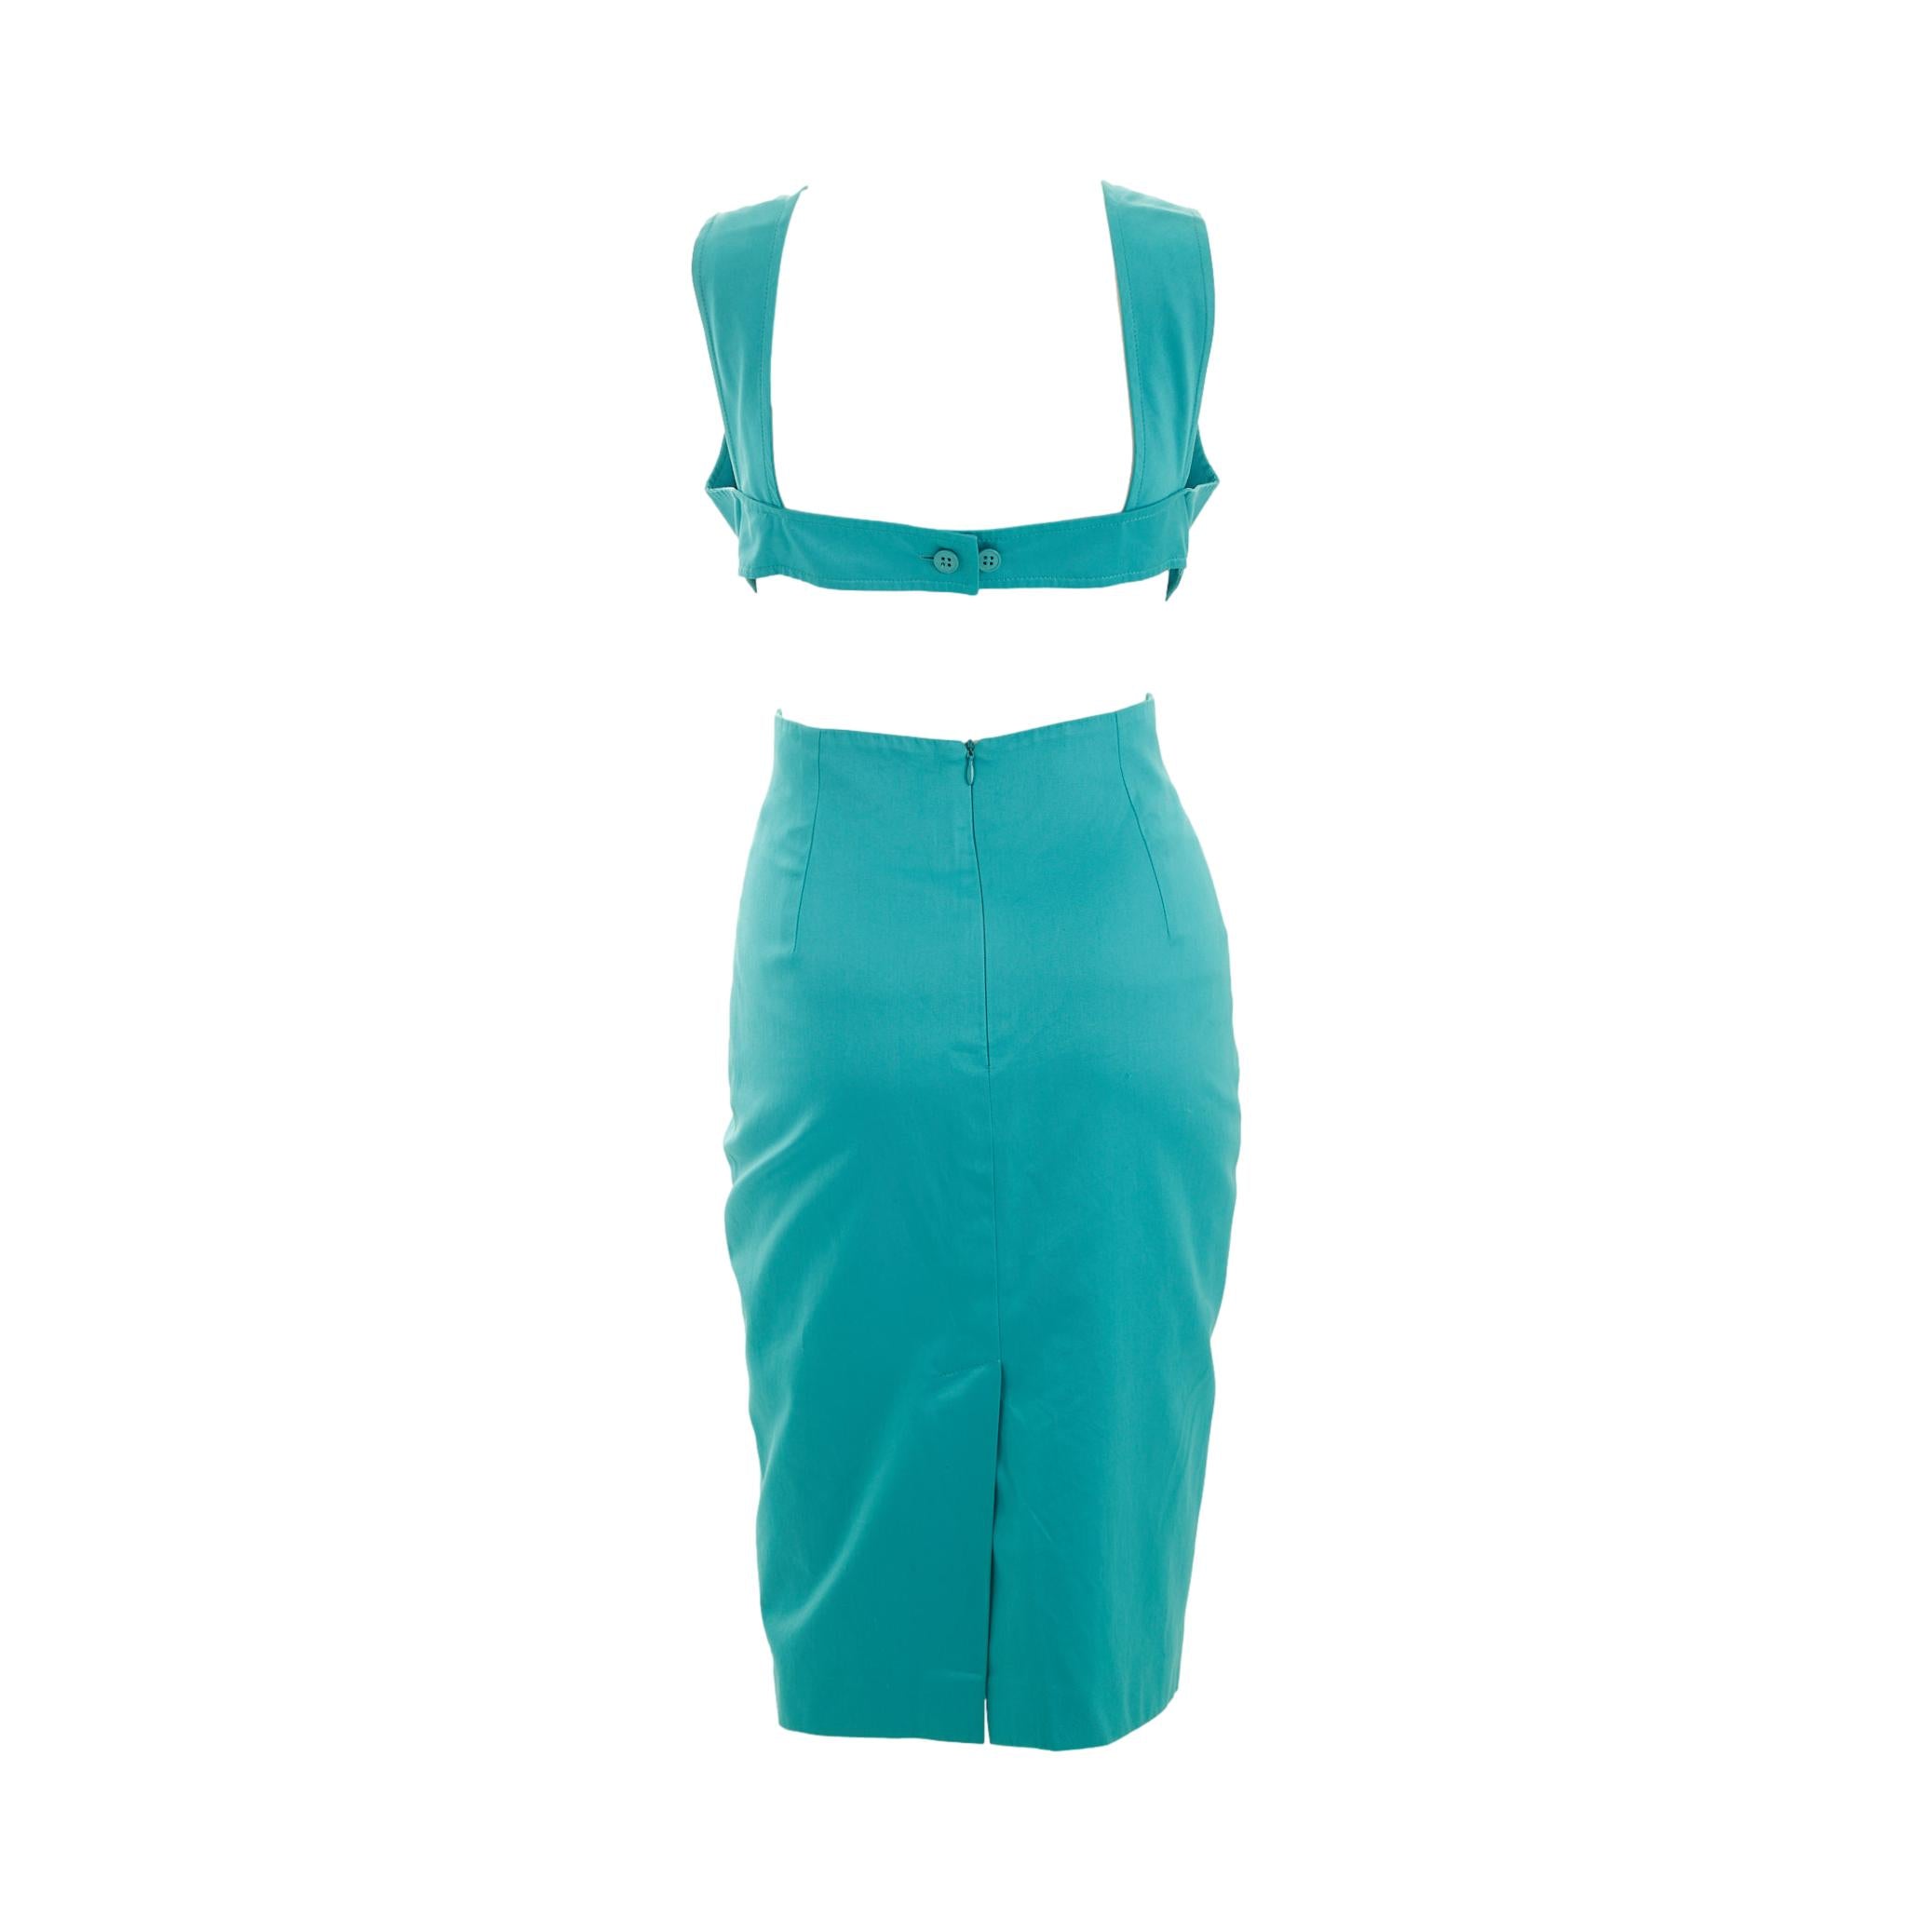 Fendi Turquoise Cutout Dress